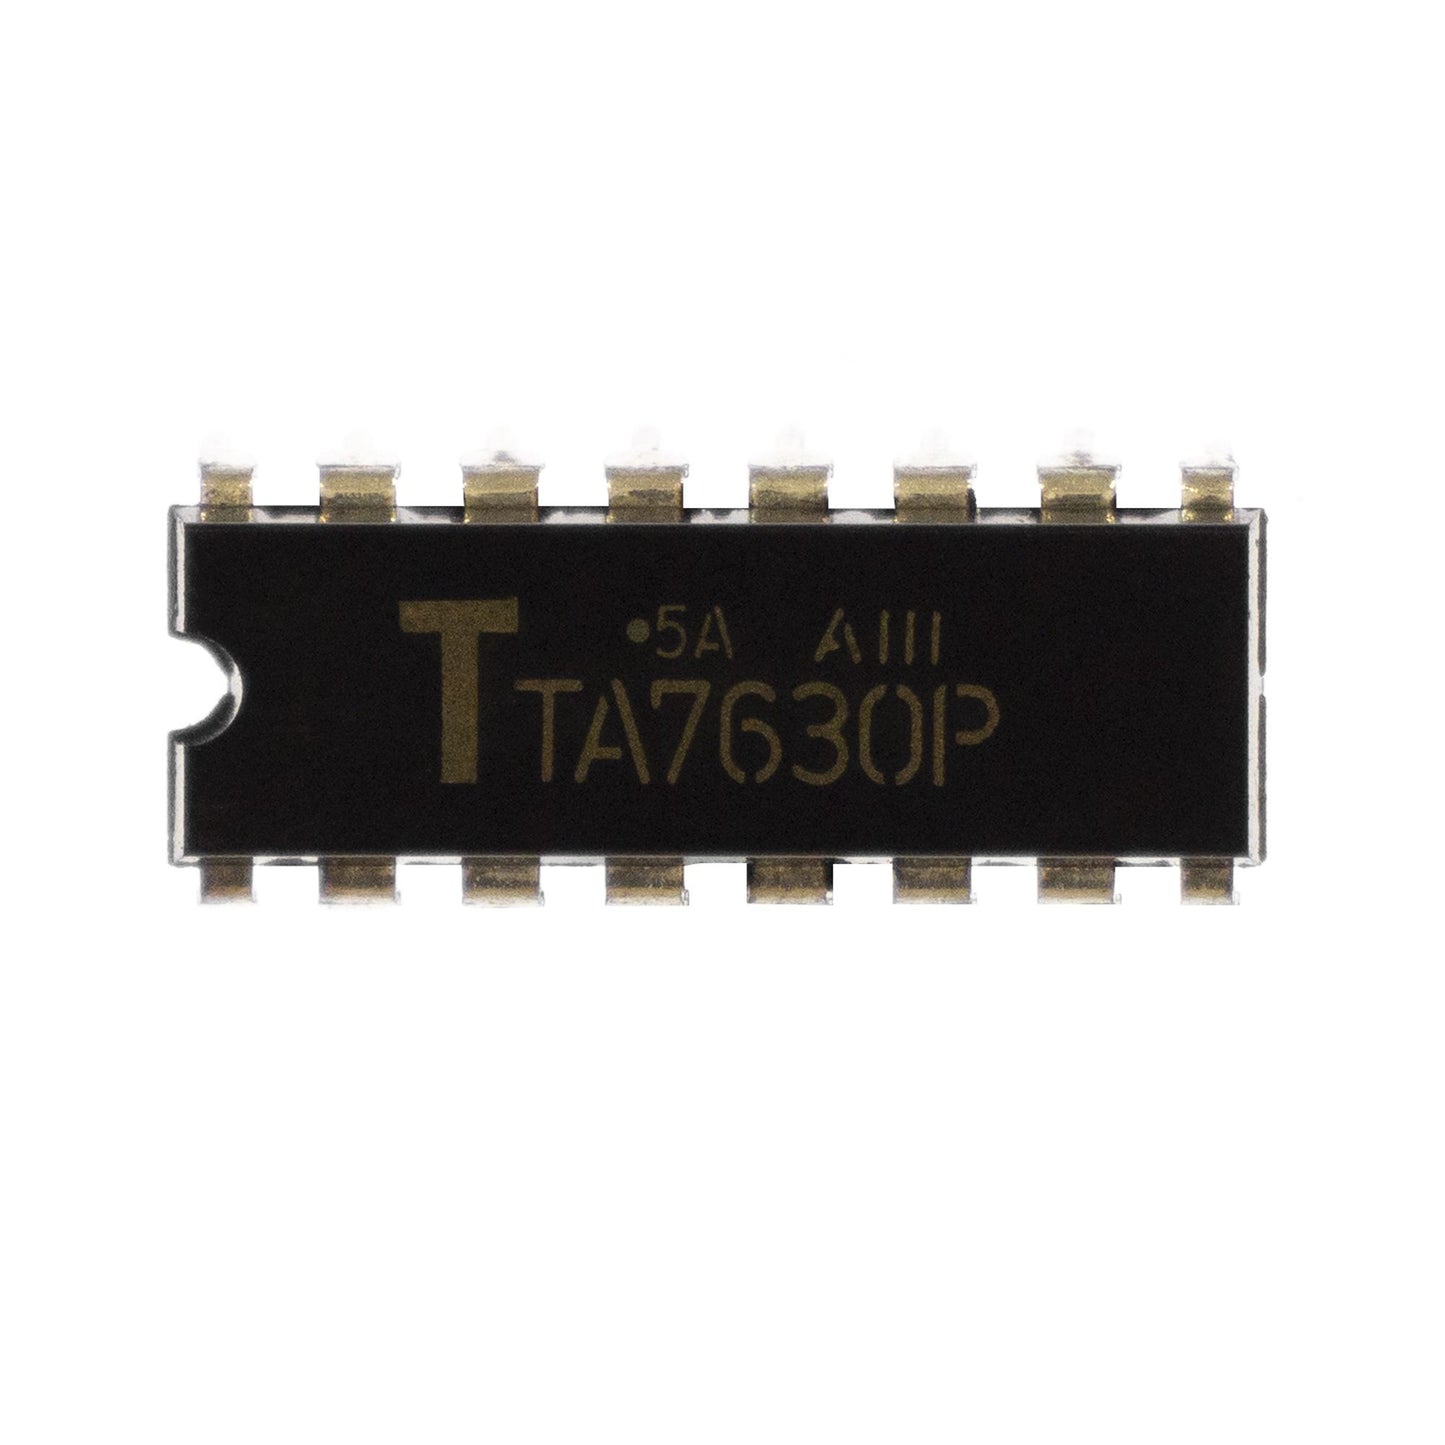 TA7630P circuito integrato, transistor, componente elettronico, 16 contatti